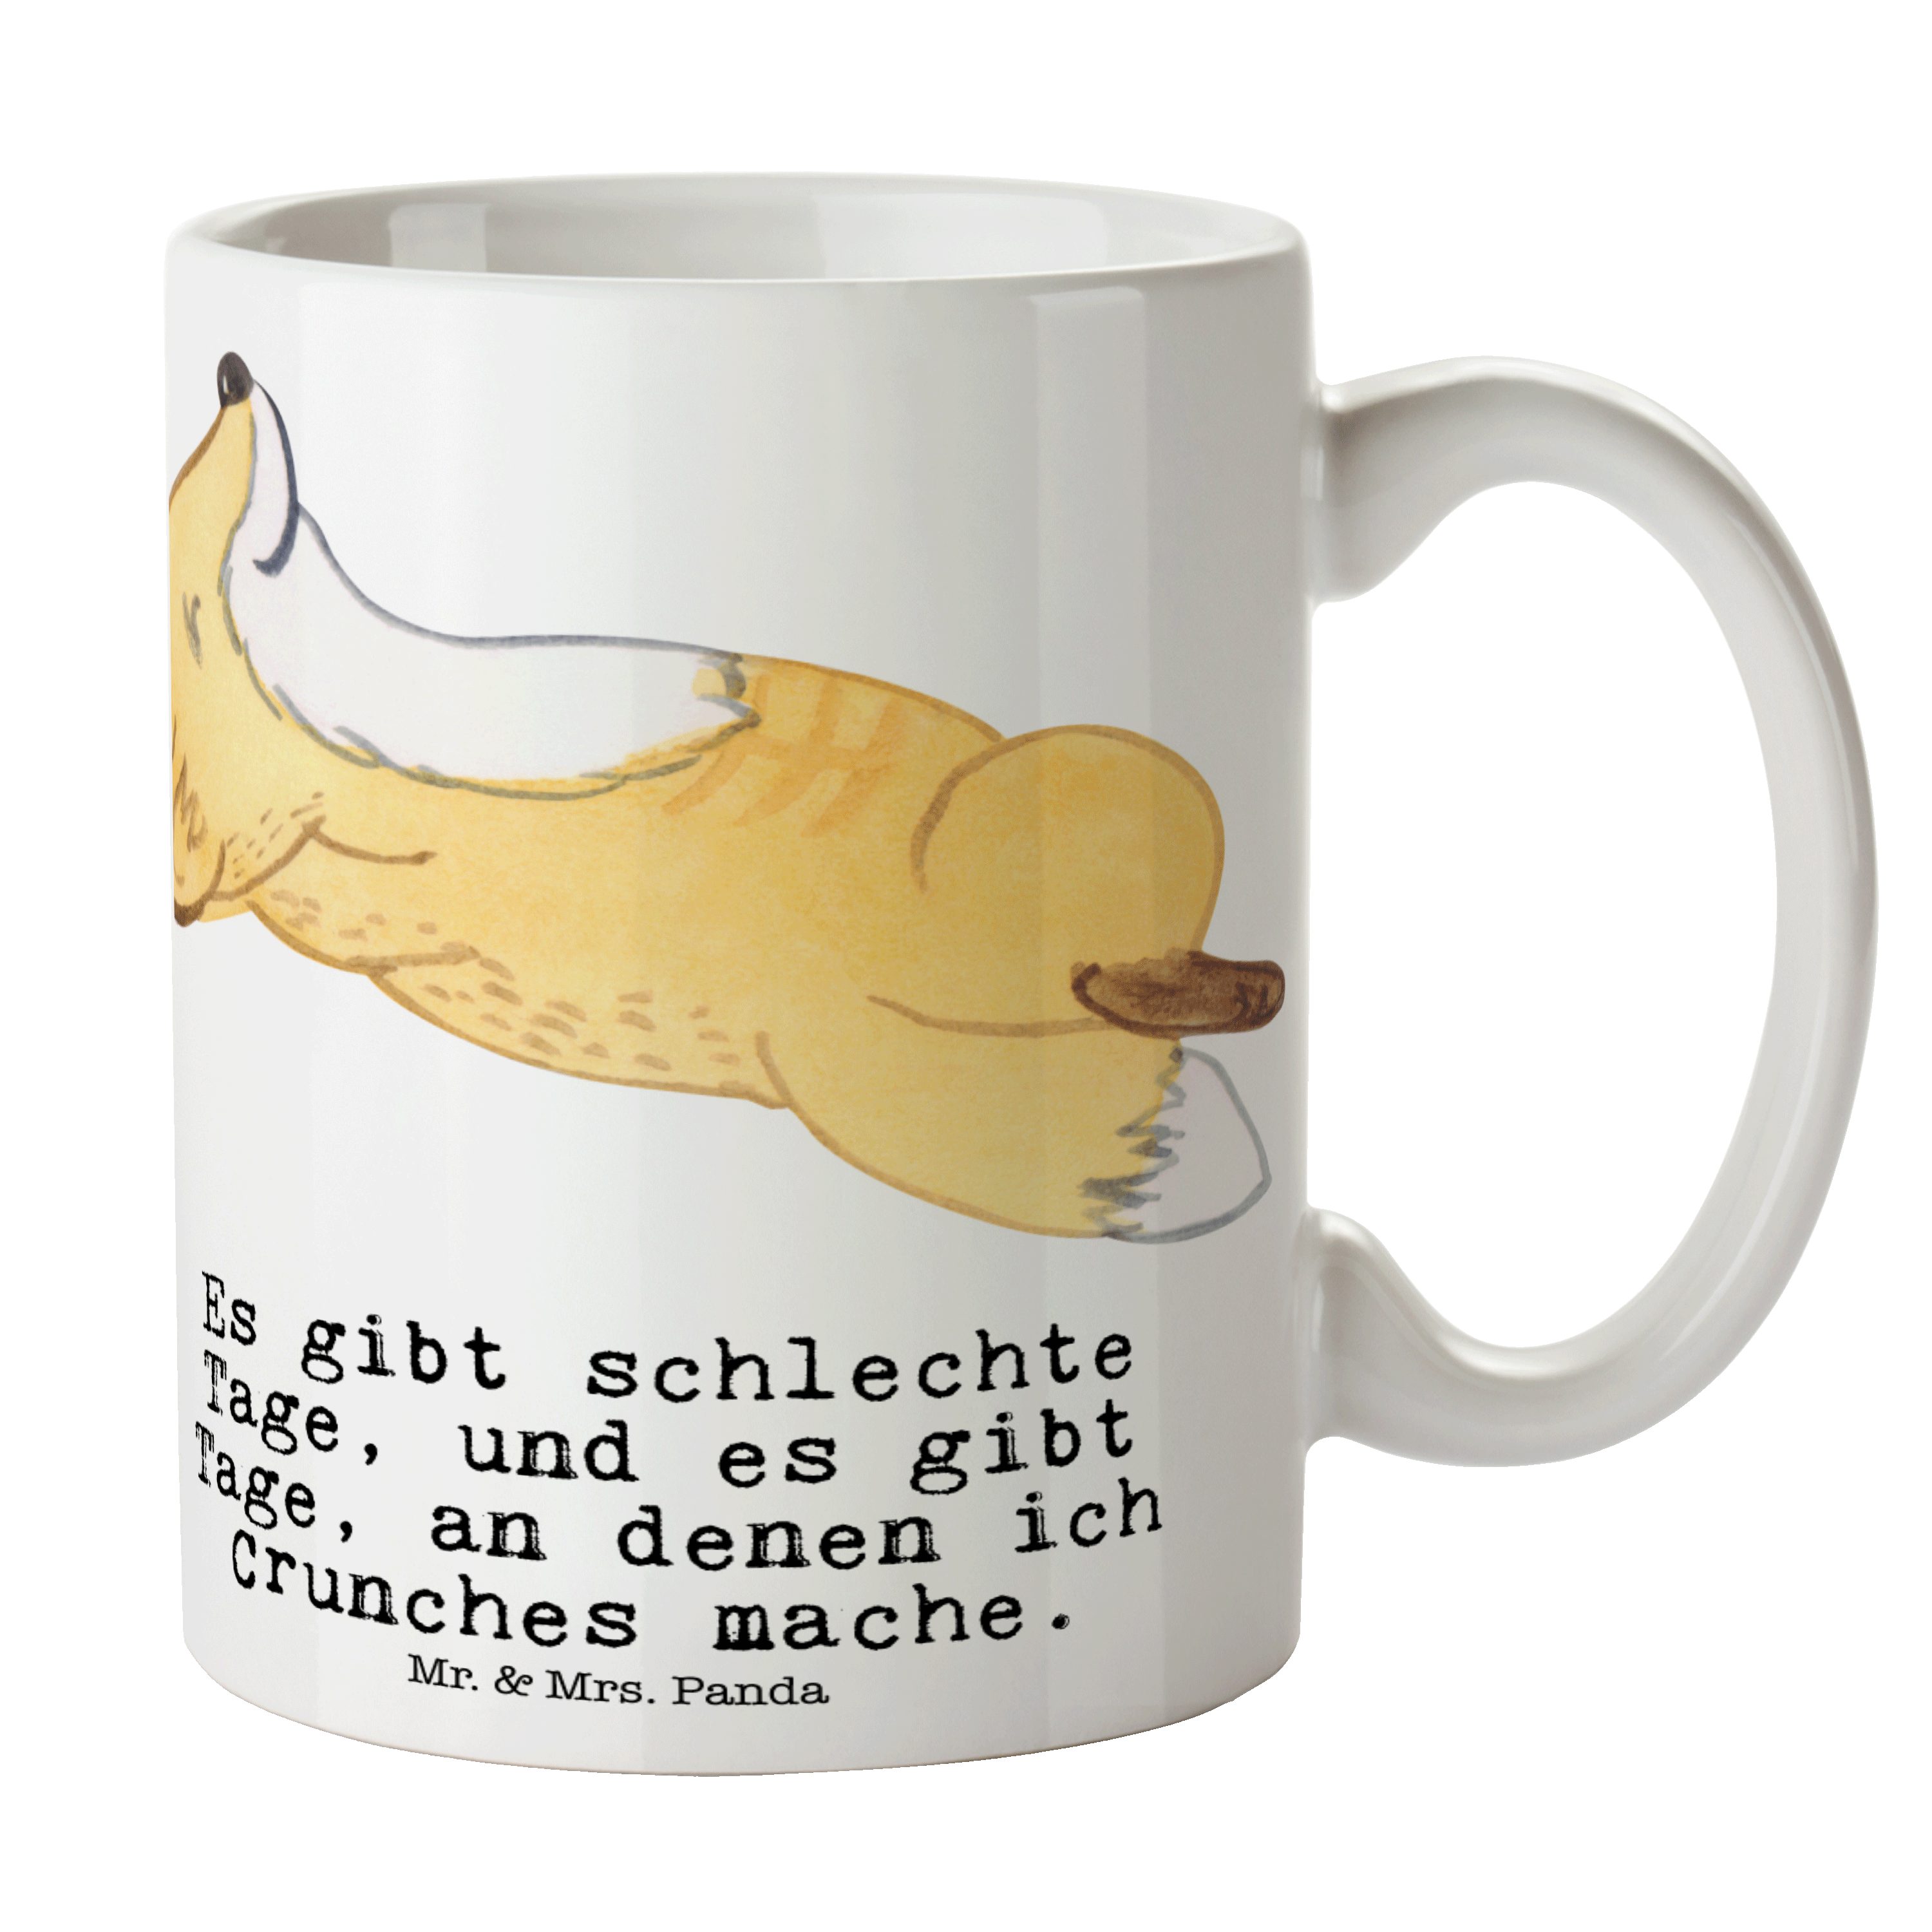 Mr. & Mrs. Panda Tasse Fuchs Crunches Tage - Weiß - Geschenk, Becher, Geschenk Tasse, Sporta, Keramik